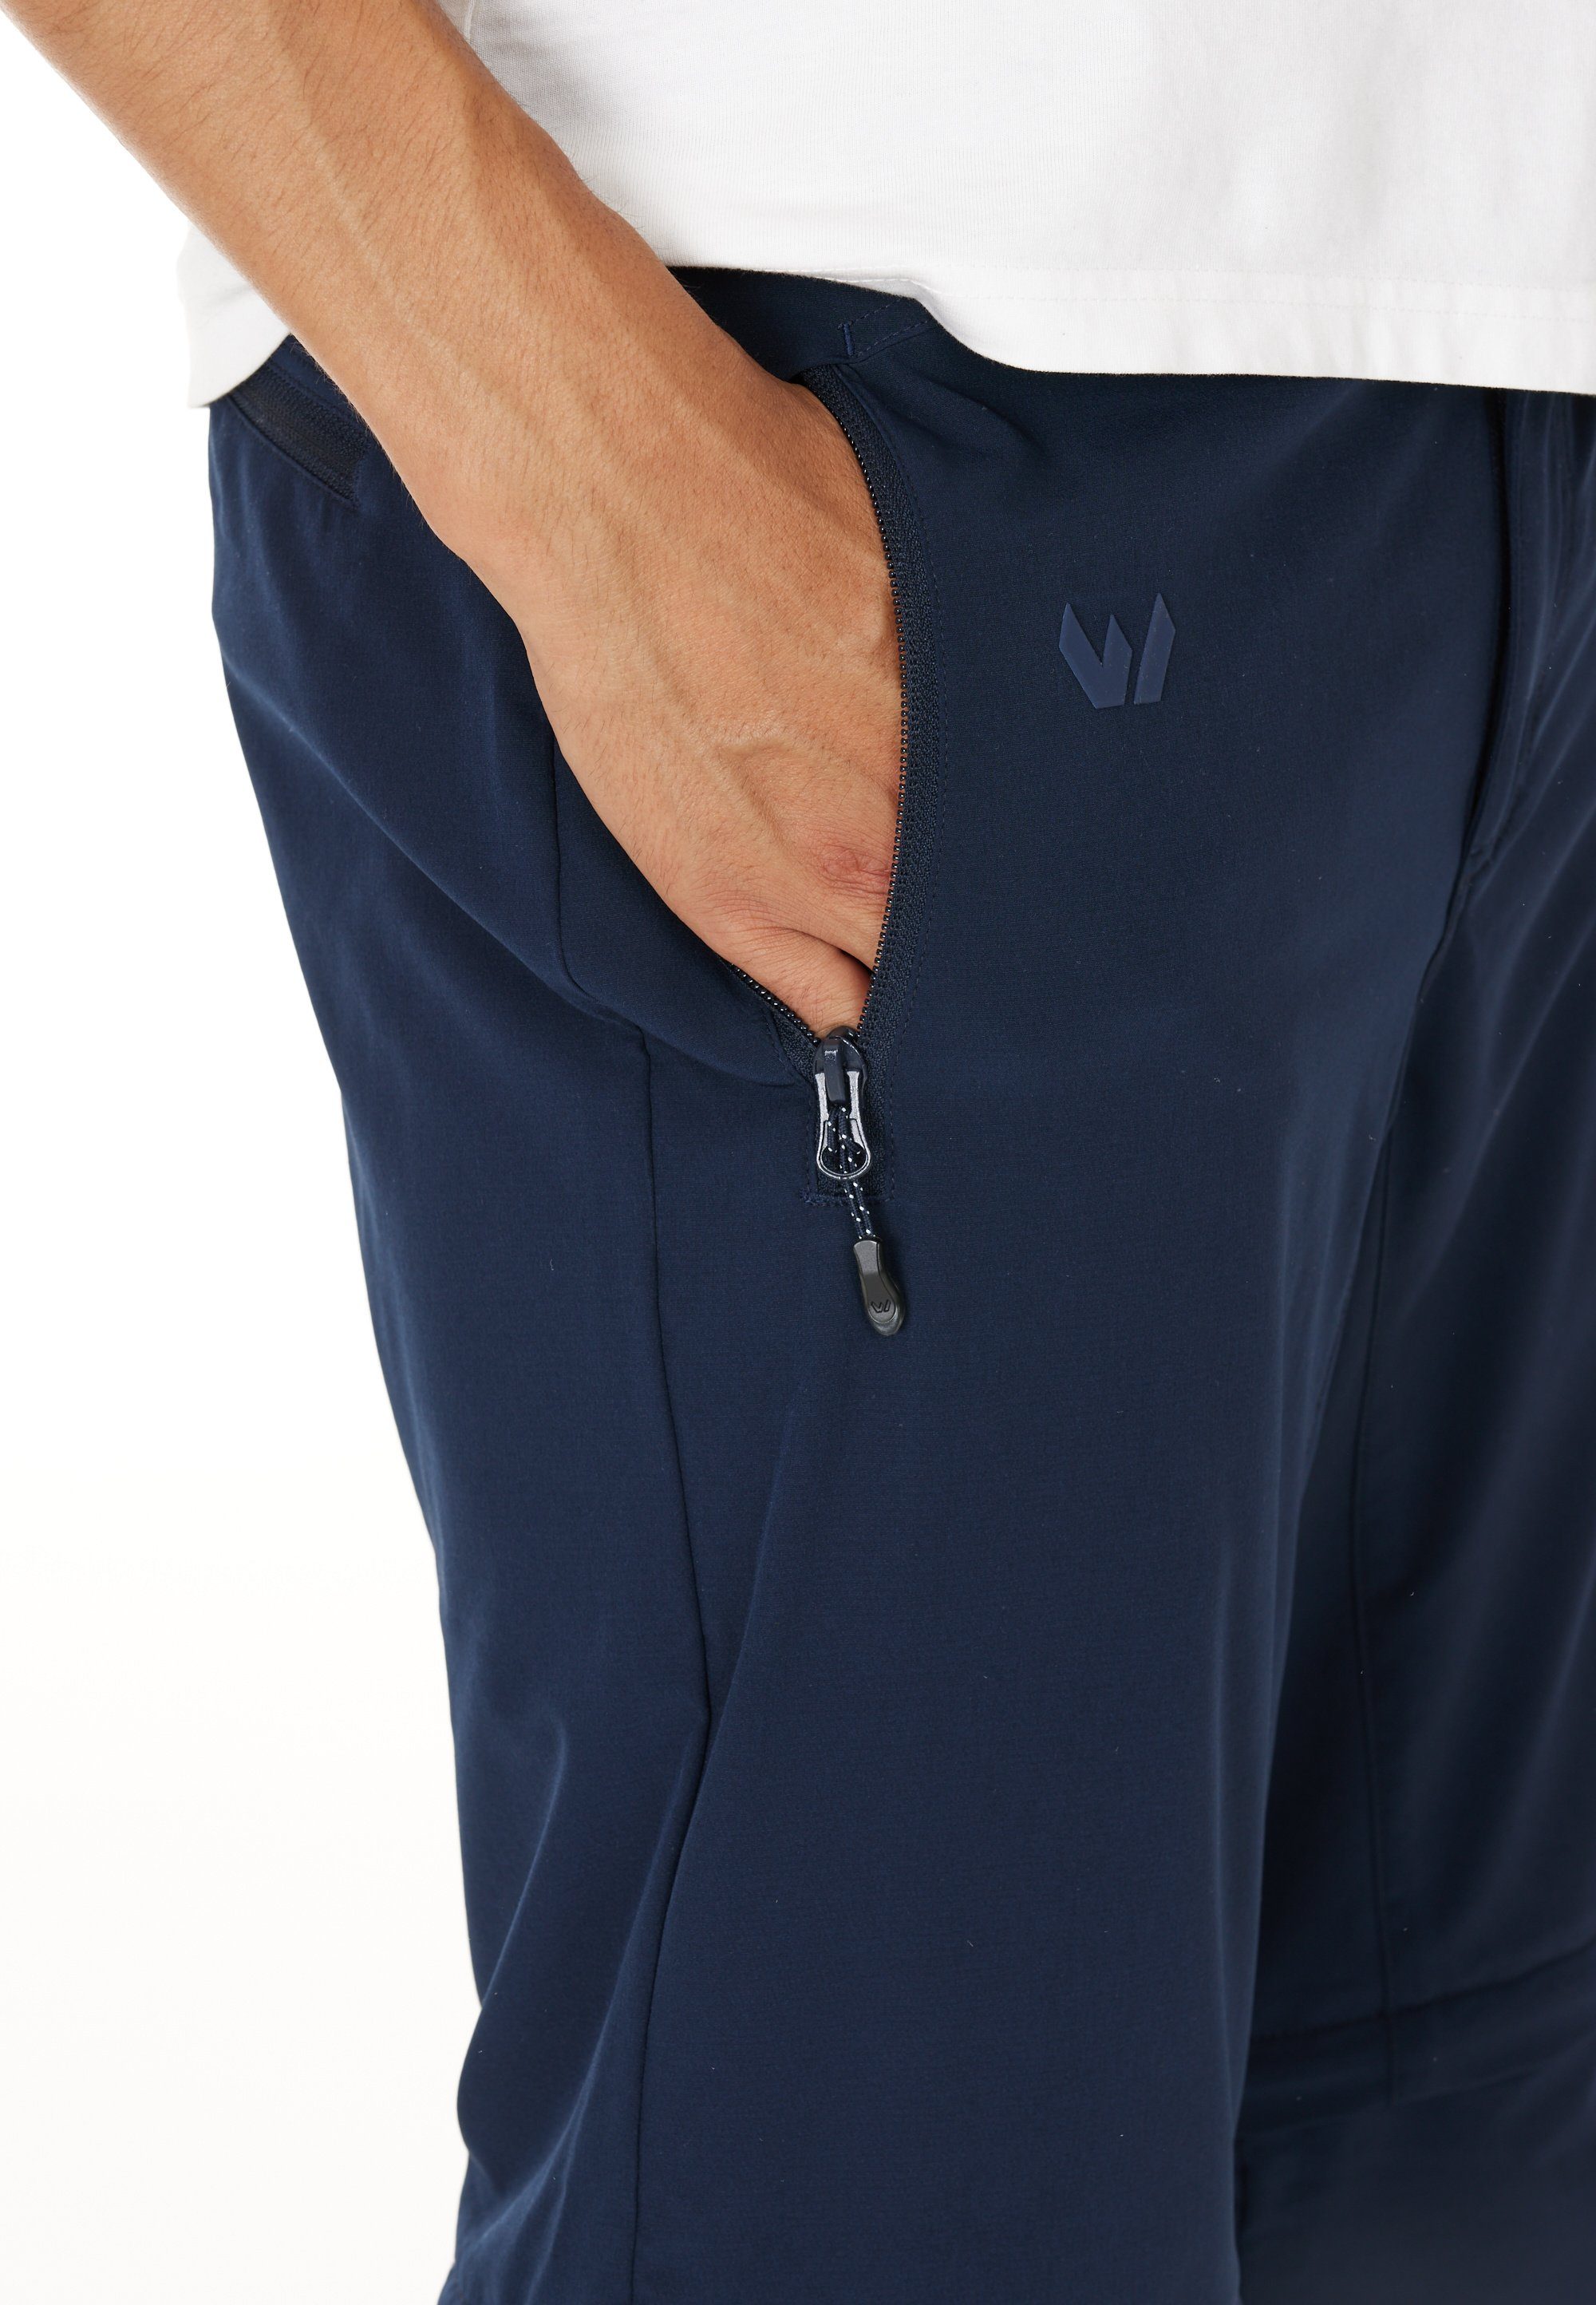 WHISTLER Outdoorhose Gerdi zur dank Shorts Hose dunkelblau oder als Zip-Off-Funktion Verwendung